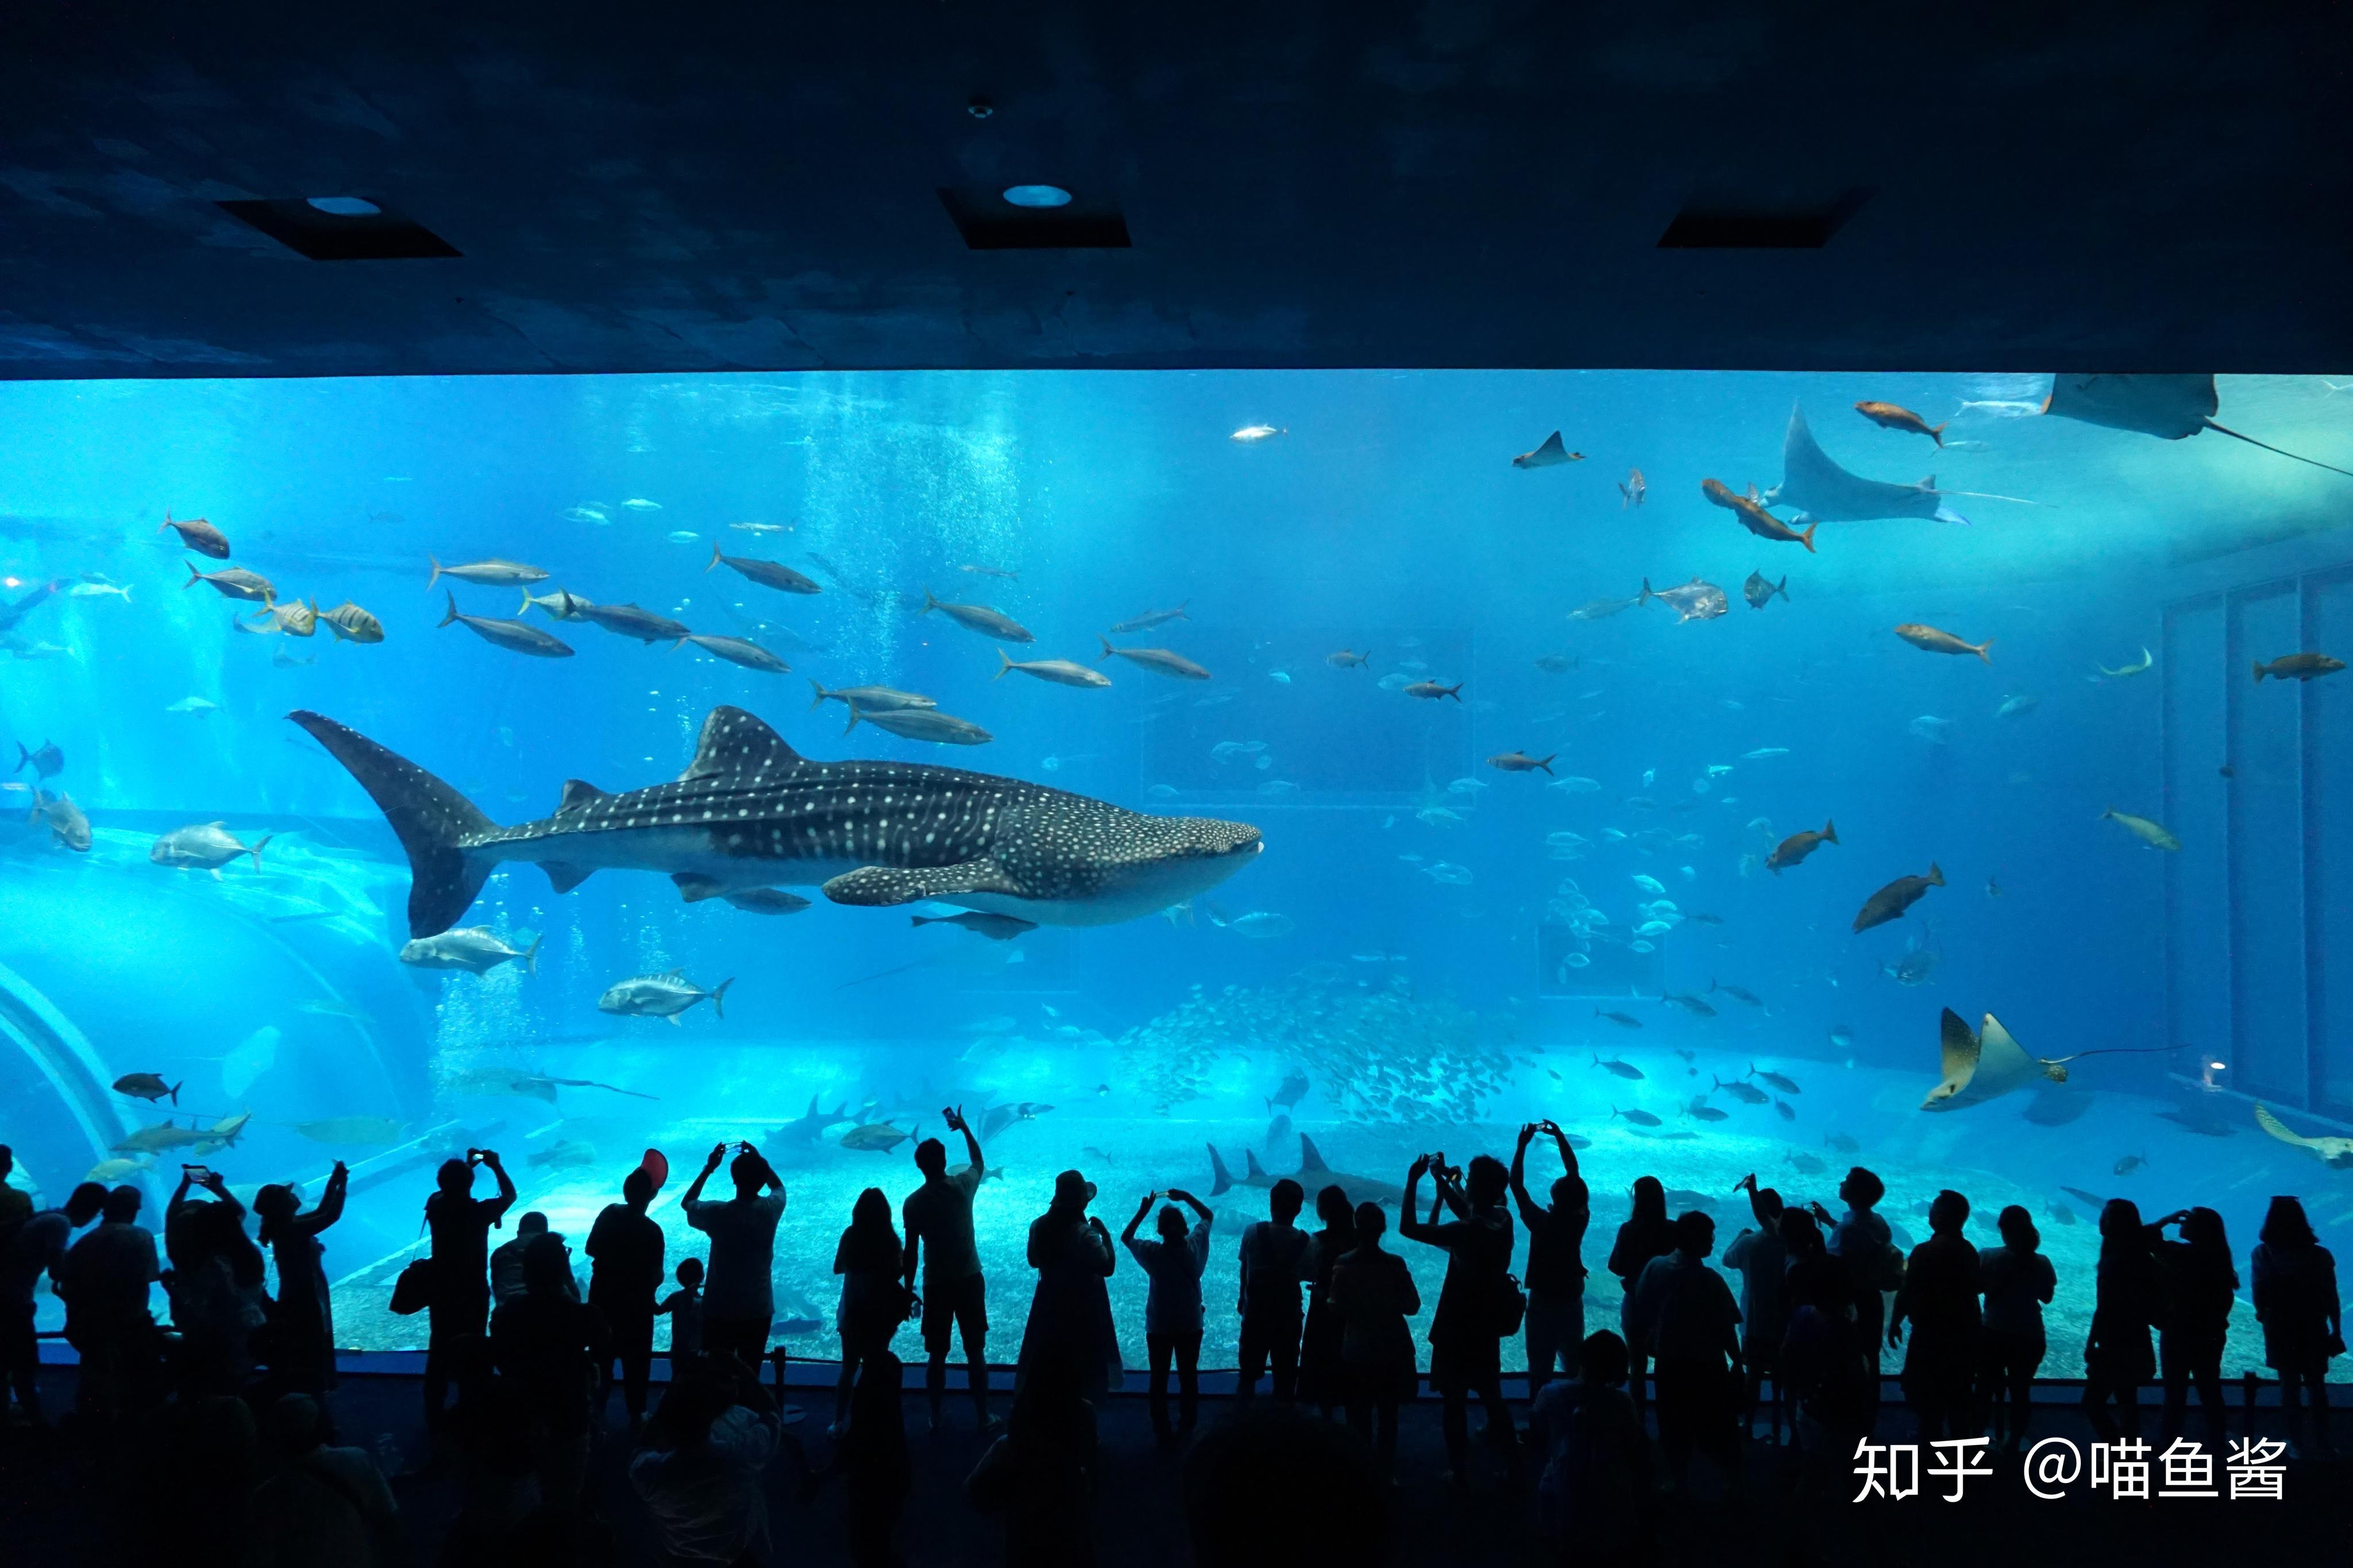 上海海洋水族馆-中关村在线摄影论坛